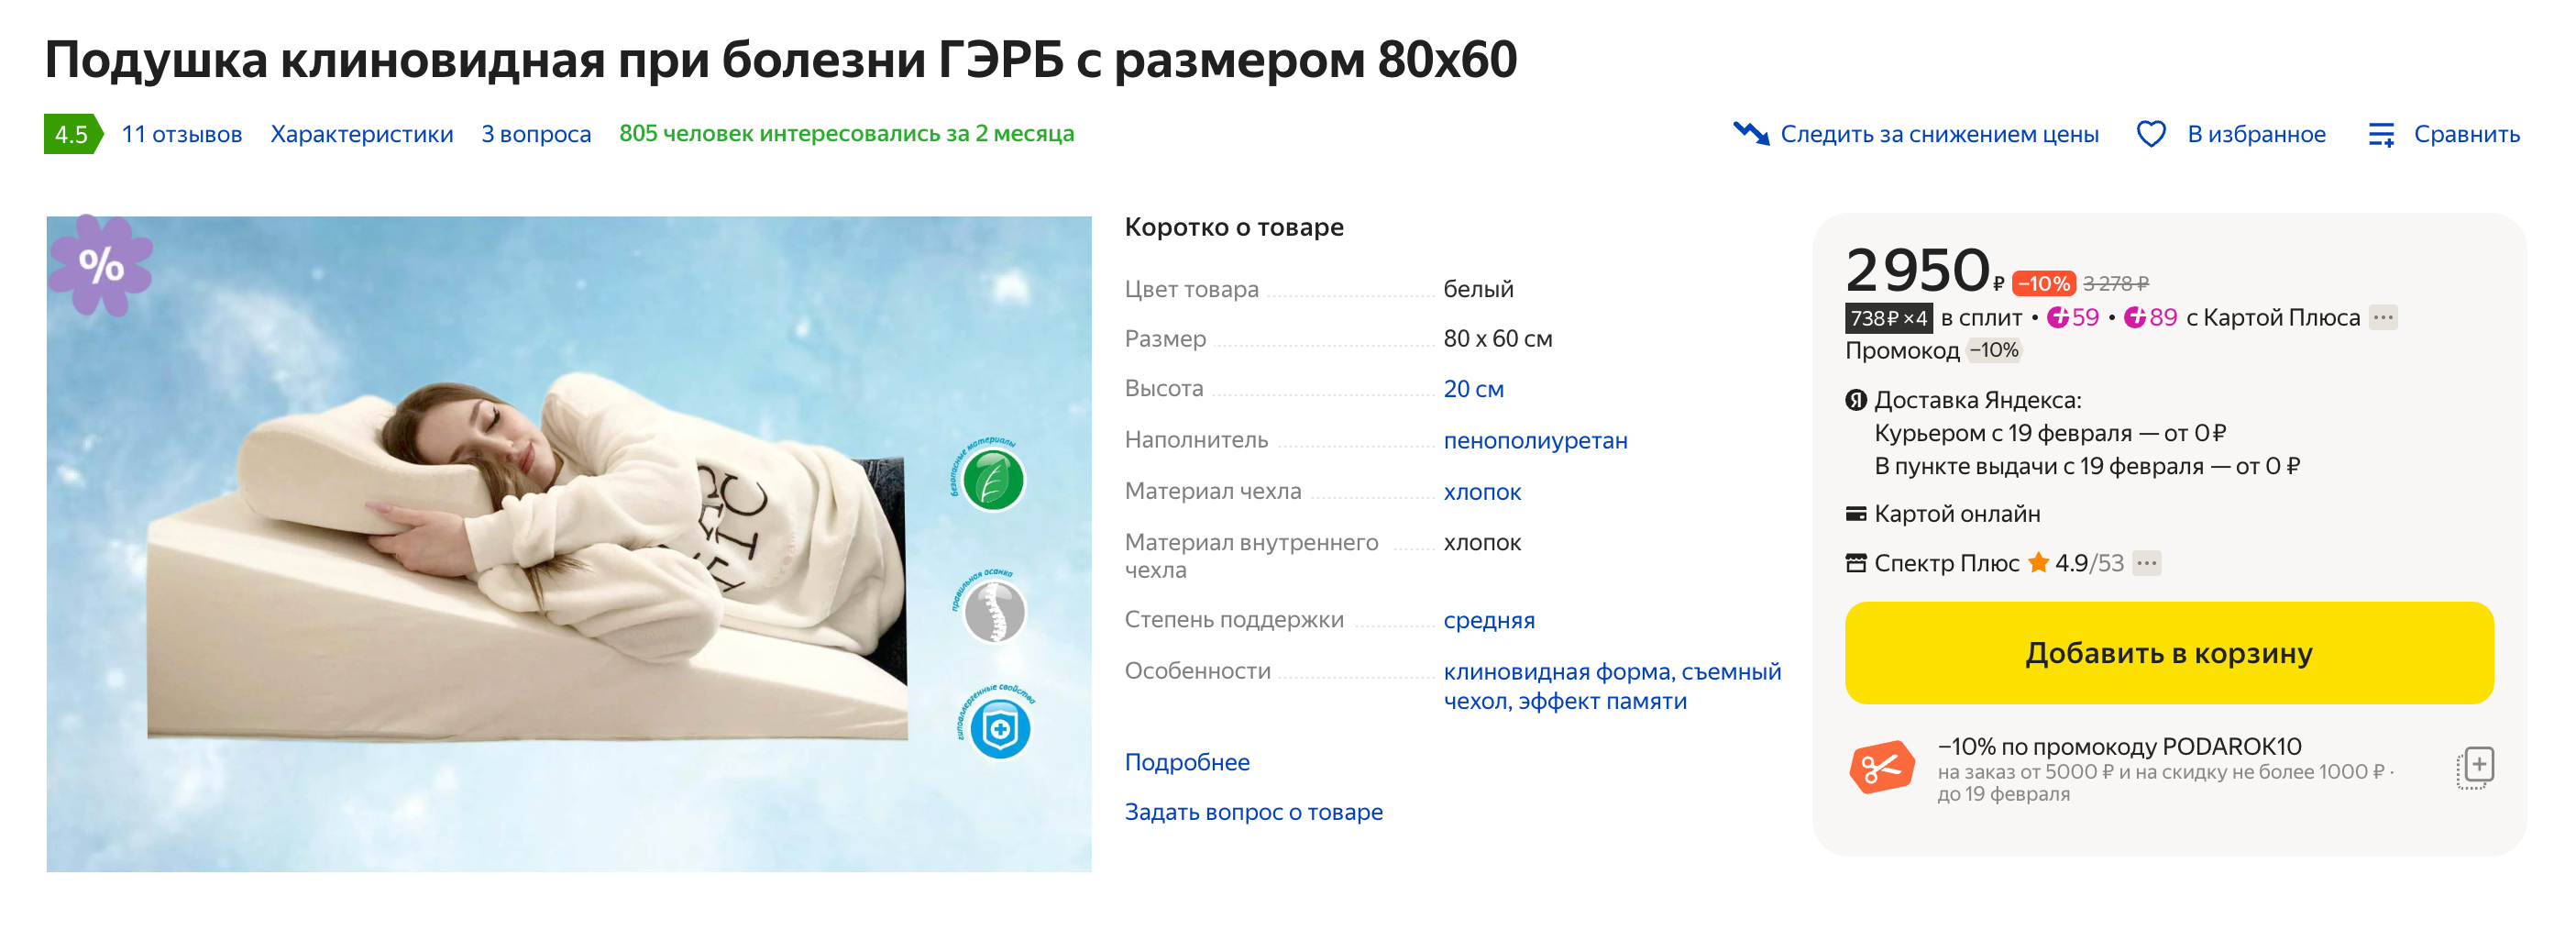 Так выглядит специальная клиновидная подушка. Источник: market.yandex.ru